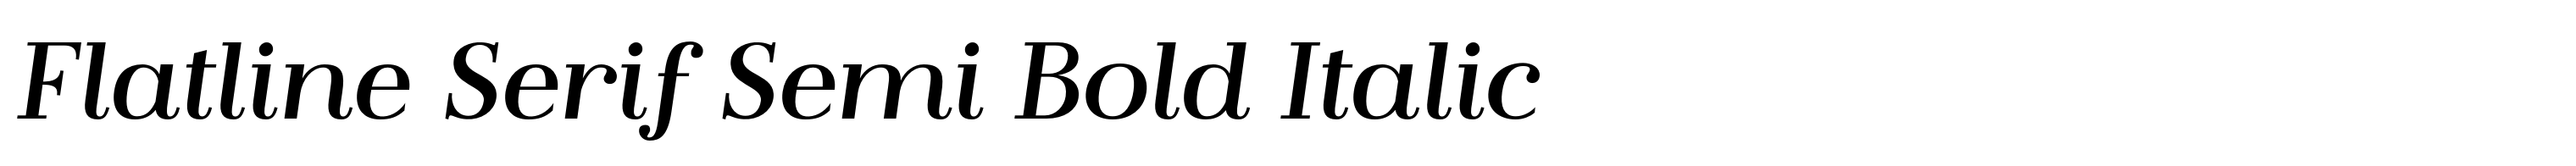 Flatline Serif Semi Bold Italic